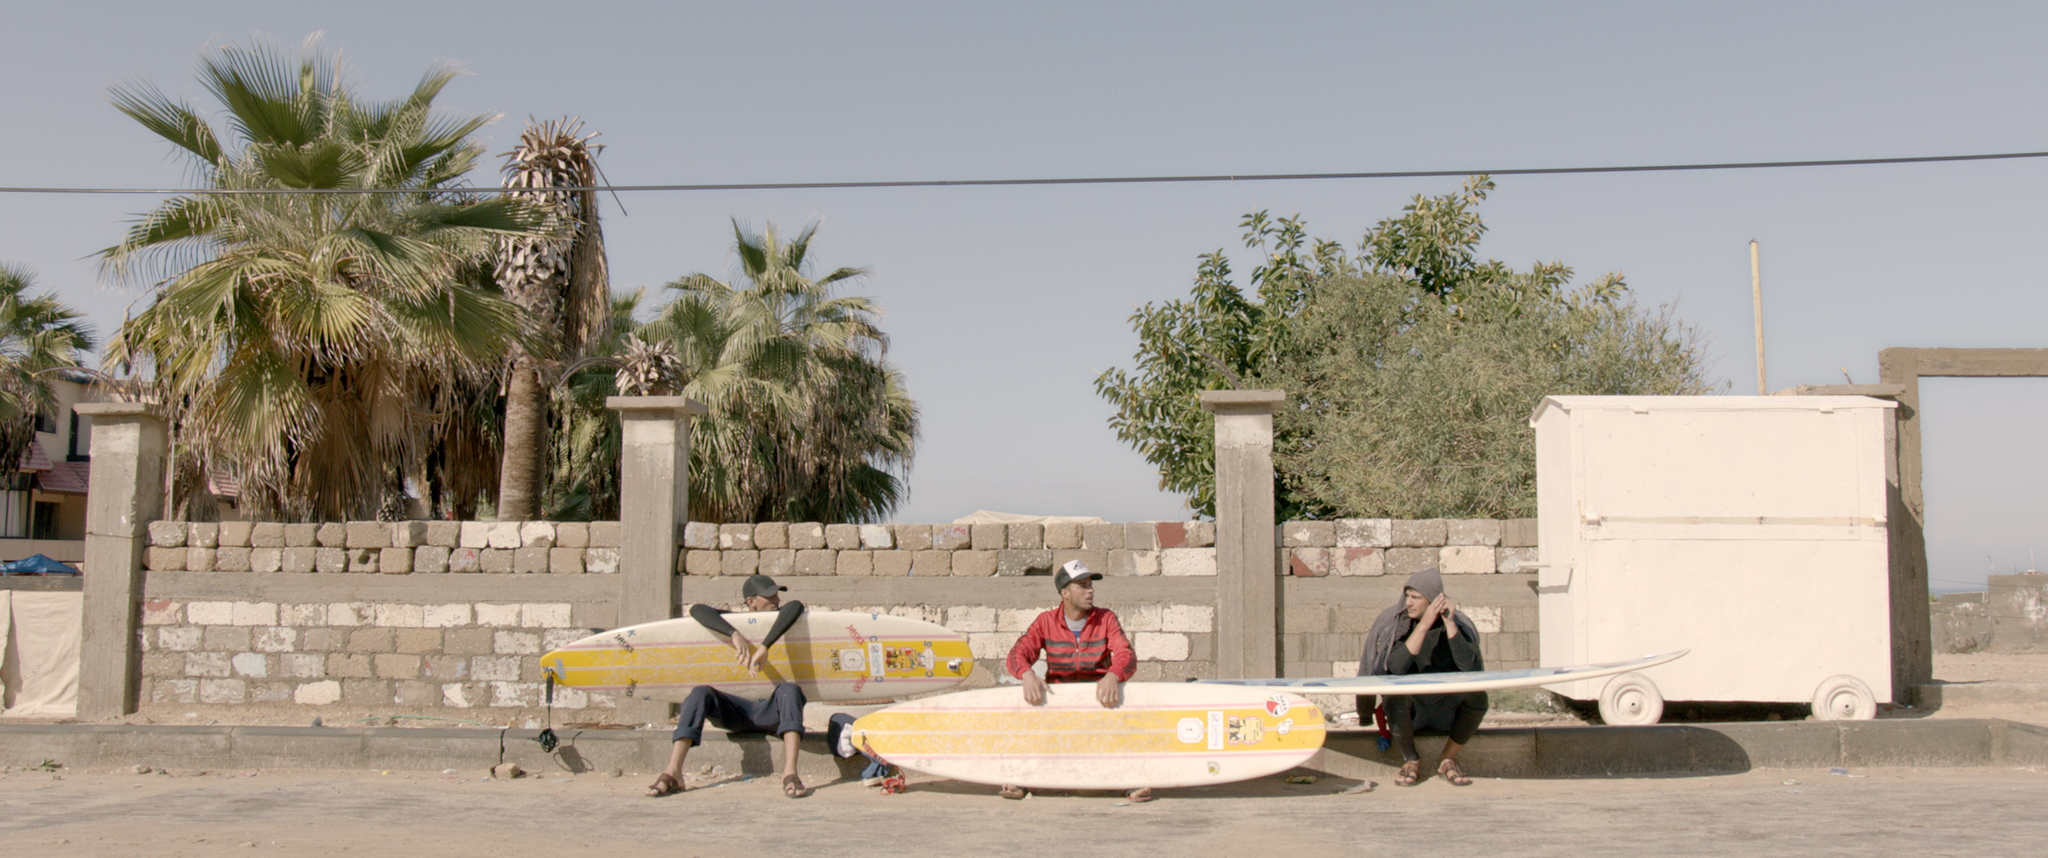 Gaza Surf Club Film